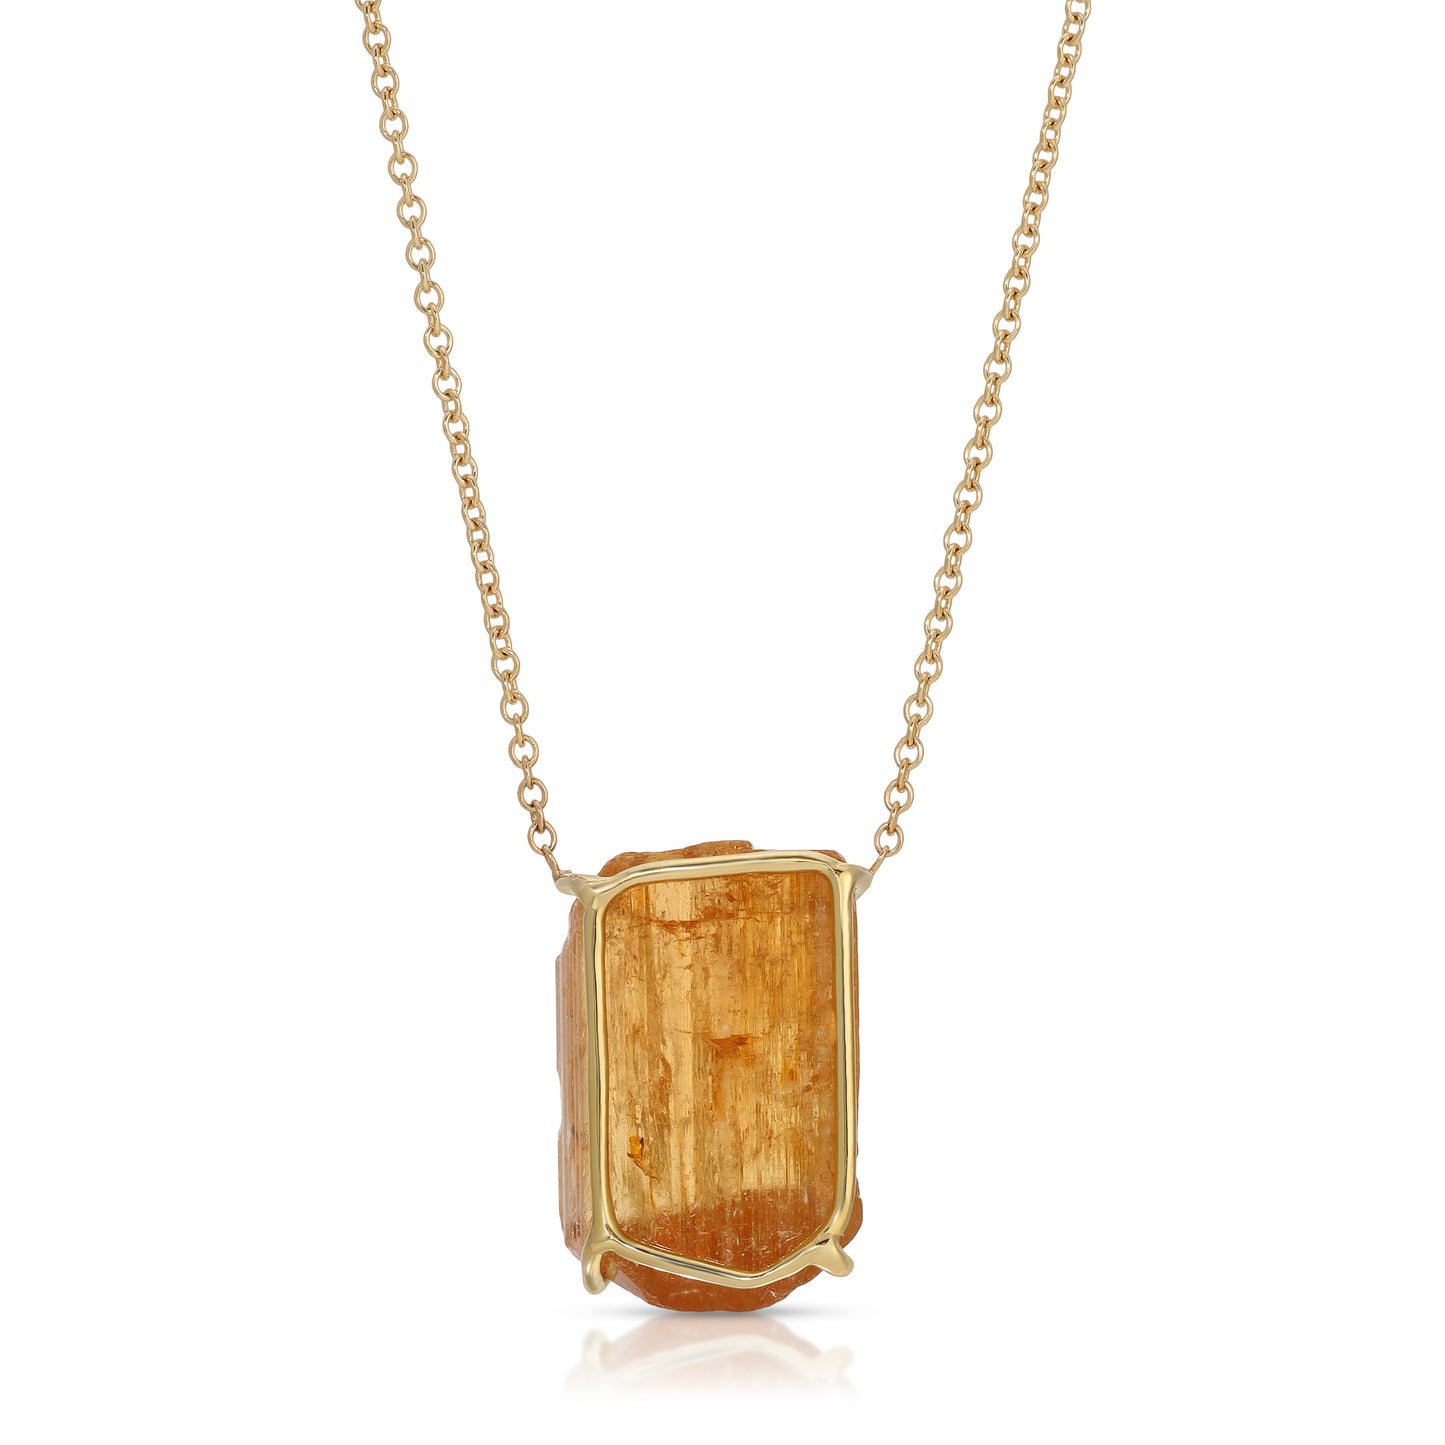 Golden Imperial Topaz Gemstone Necklace set in 18 Karat Gold